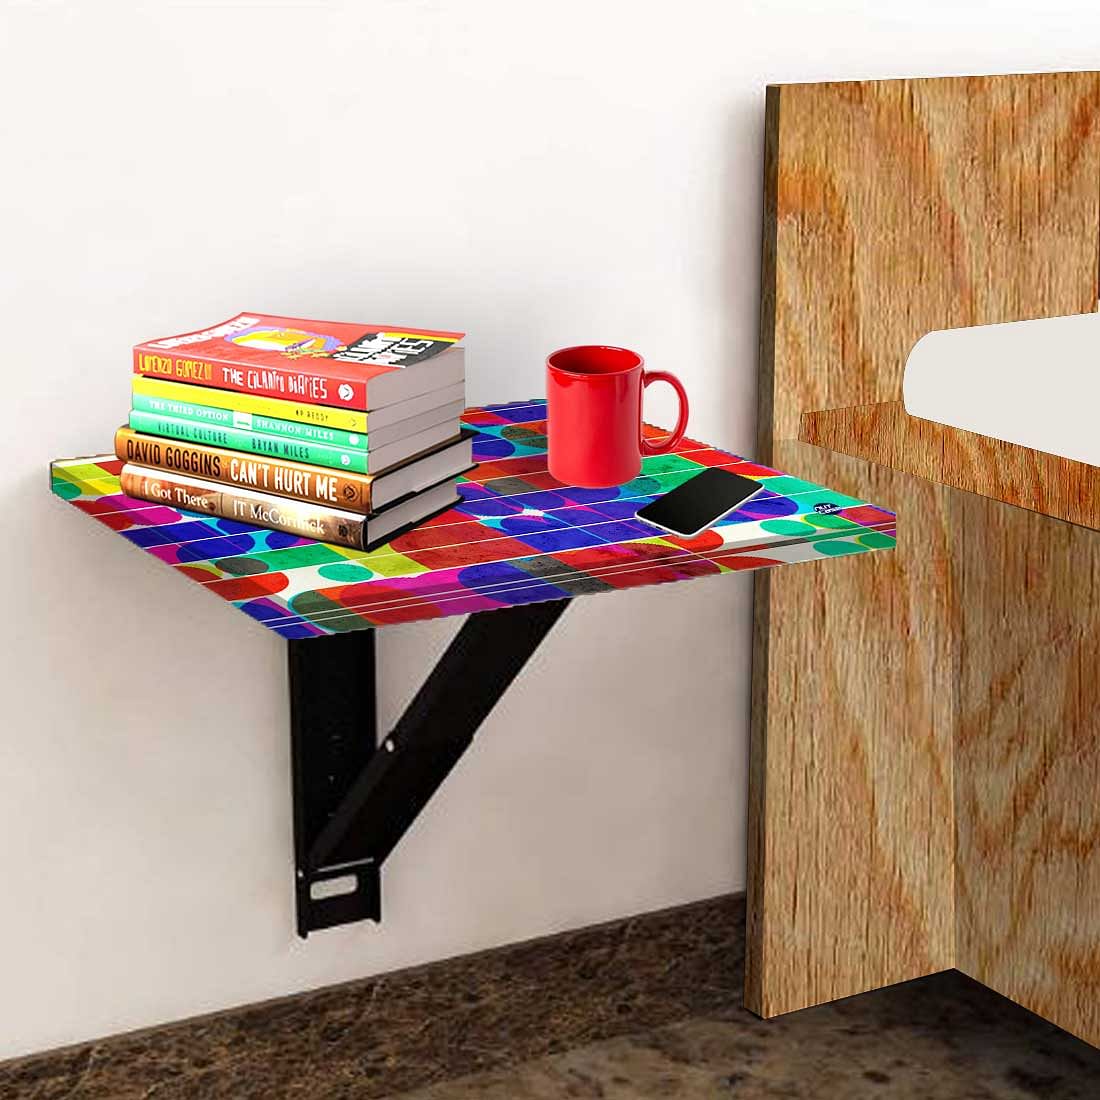 Folding Wall Mount Bedside Table - Beautiful Pattern Nutcase